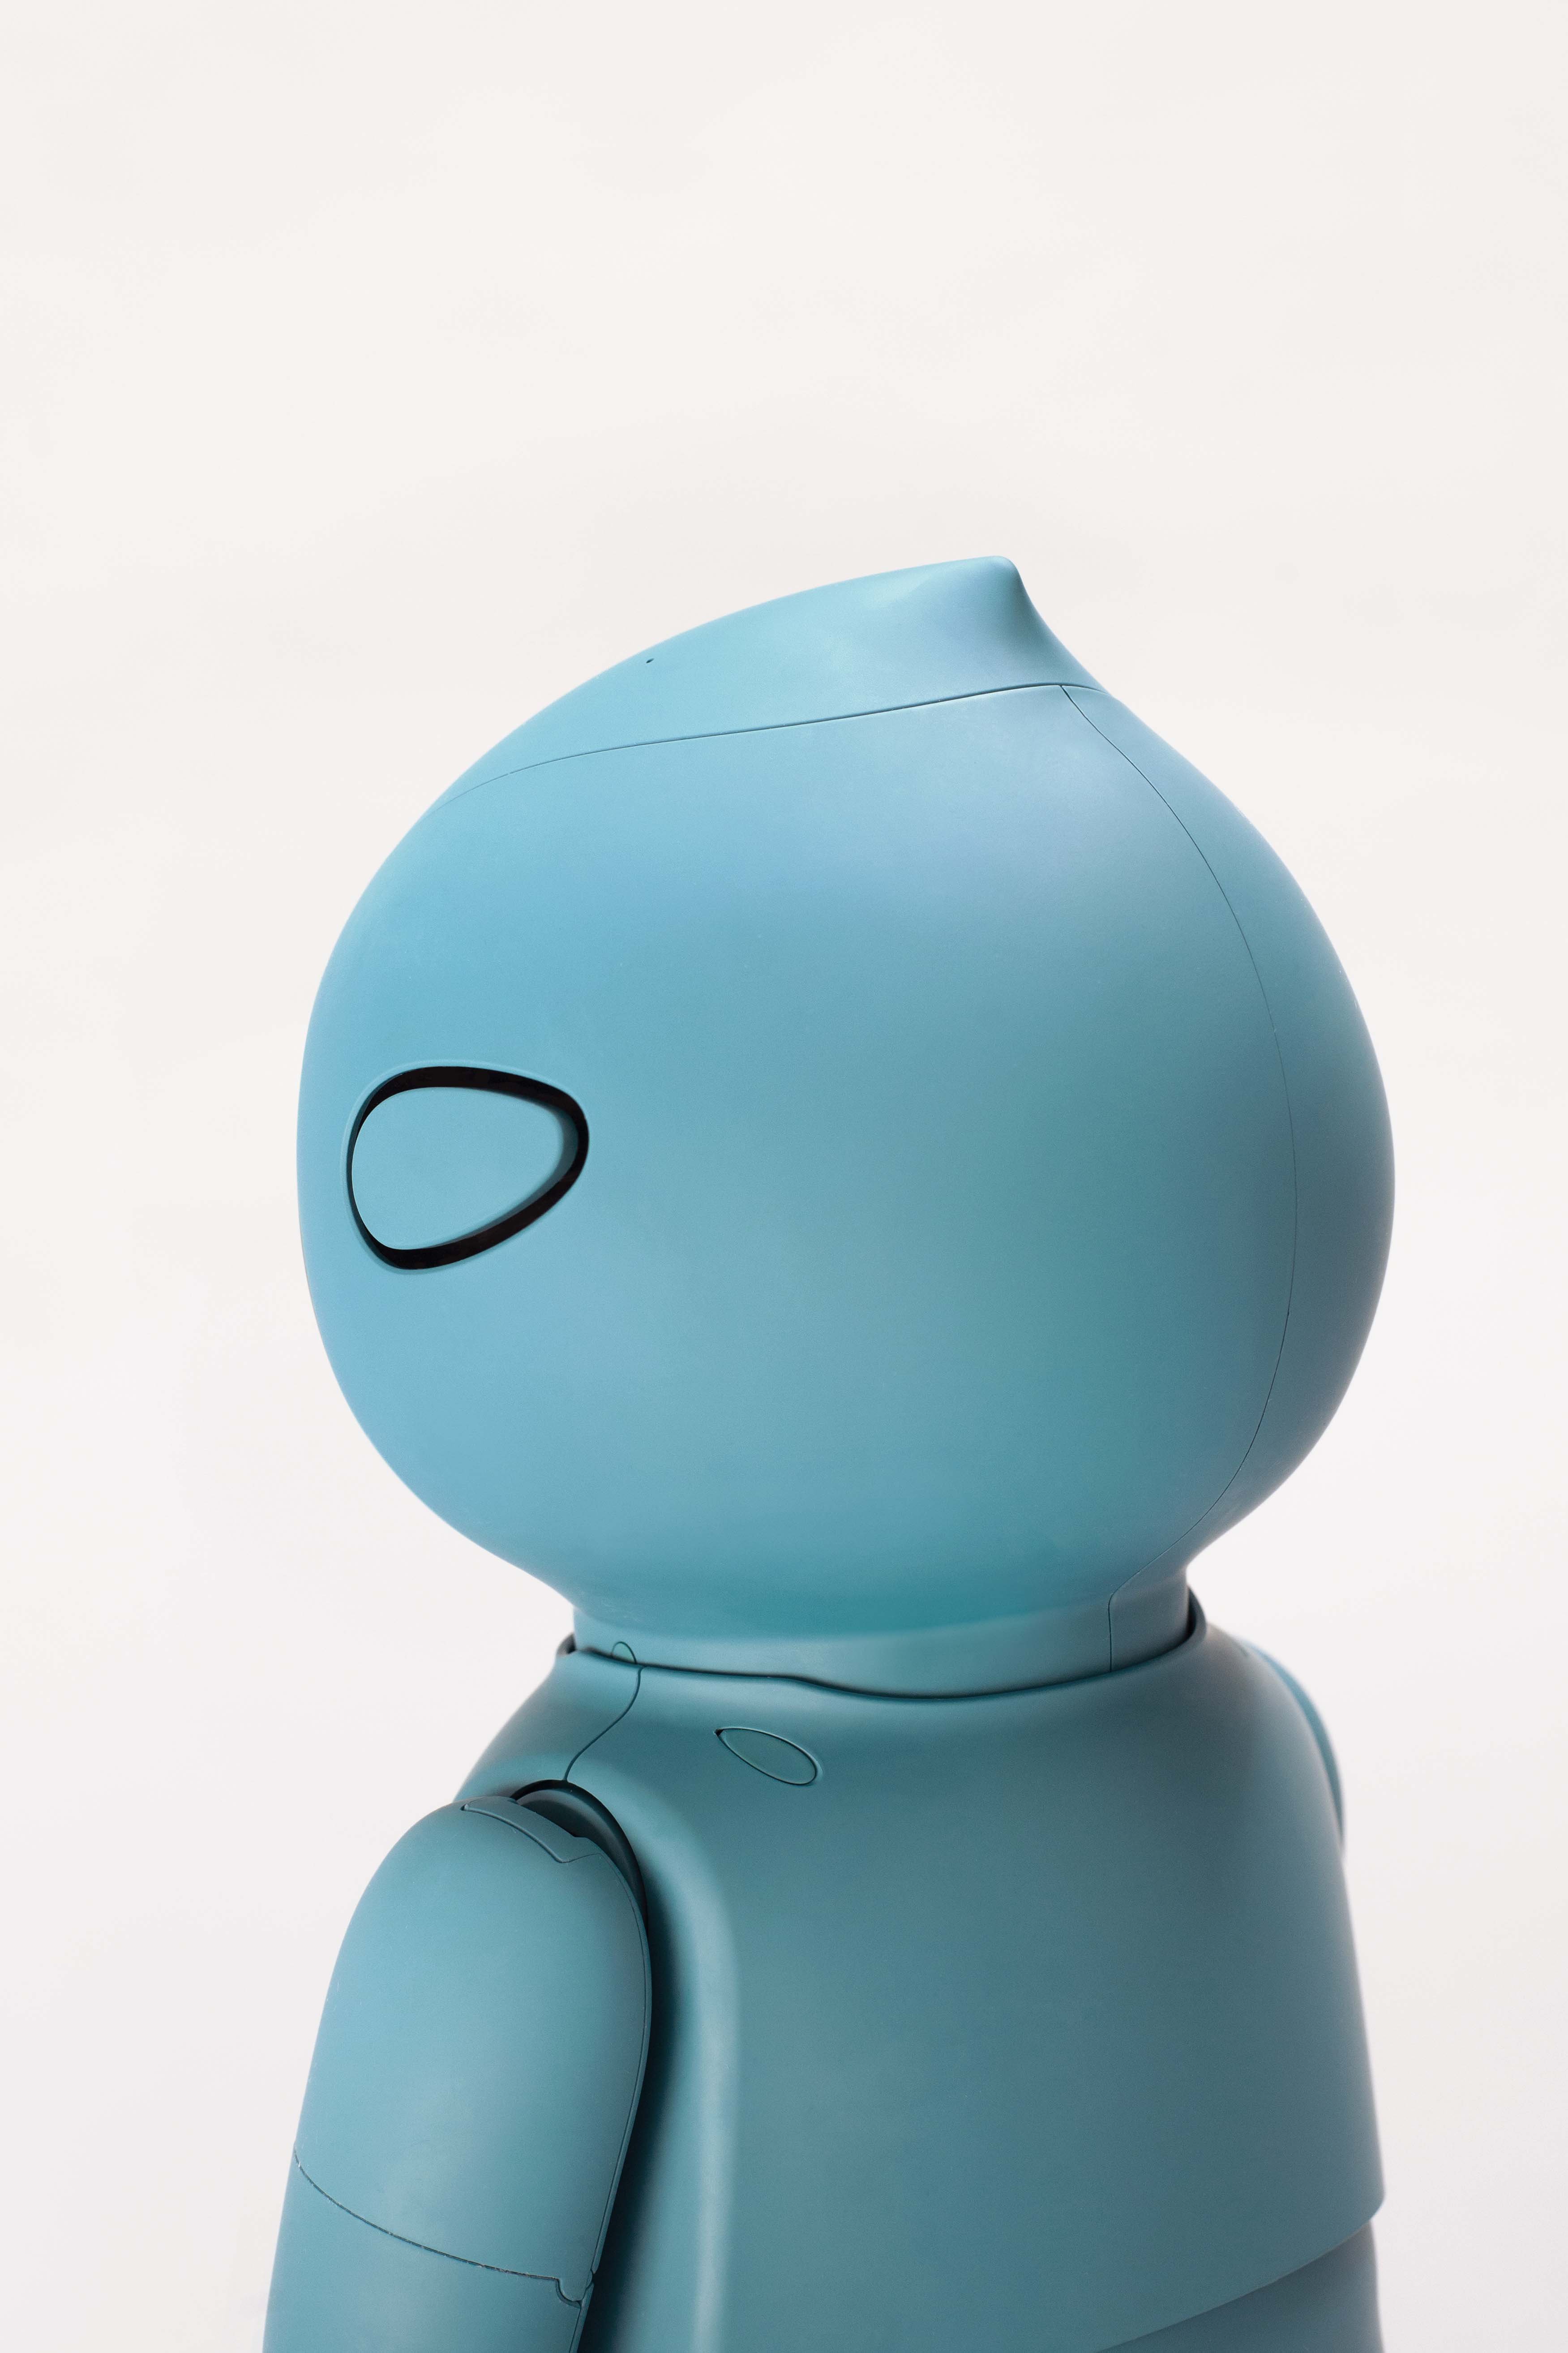 Moxie, A Revolutionary Child Development Robot